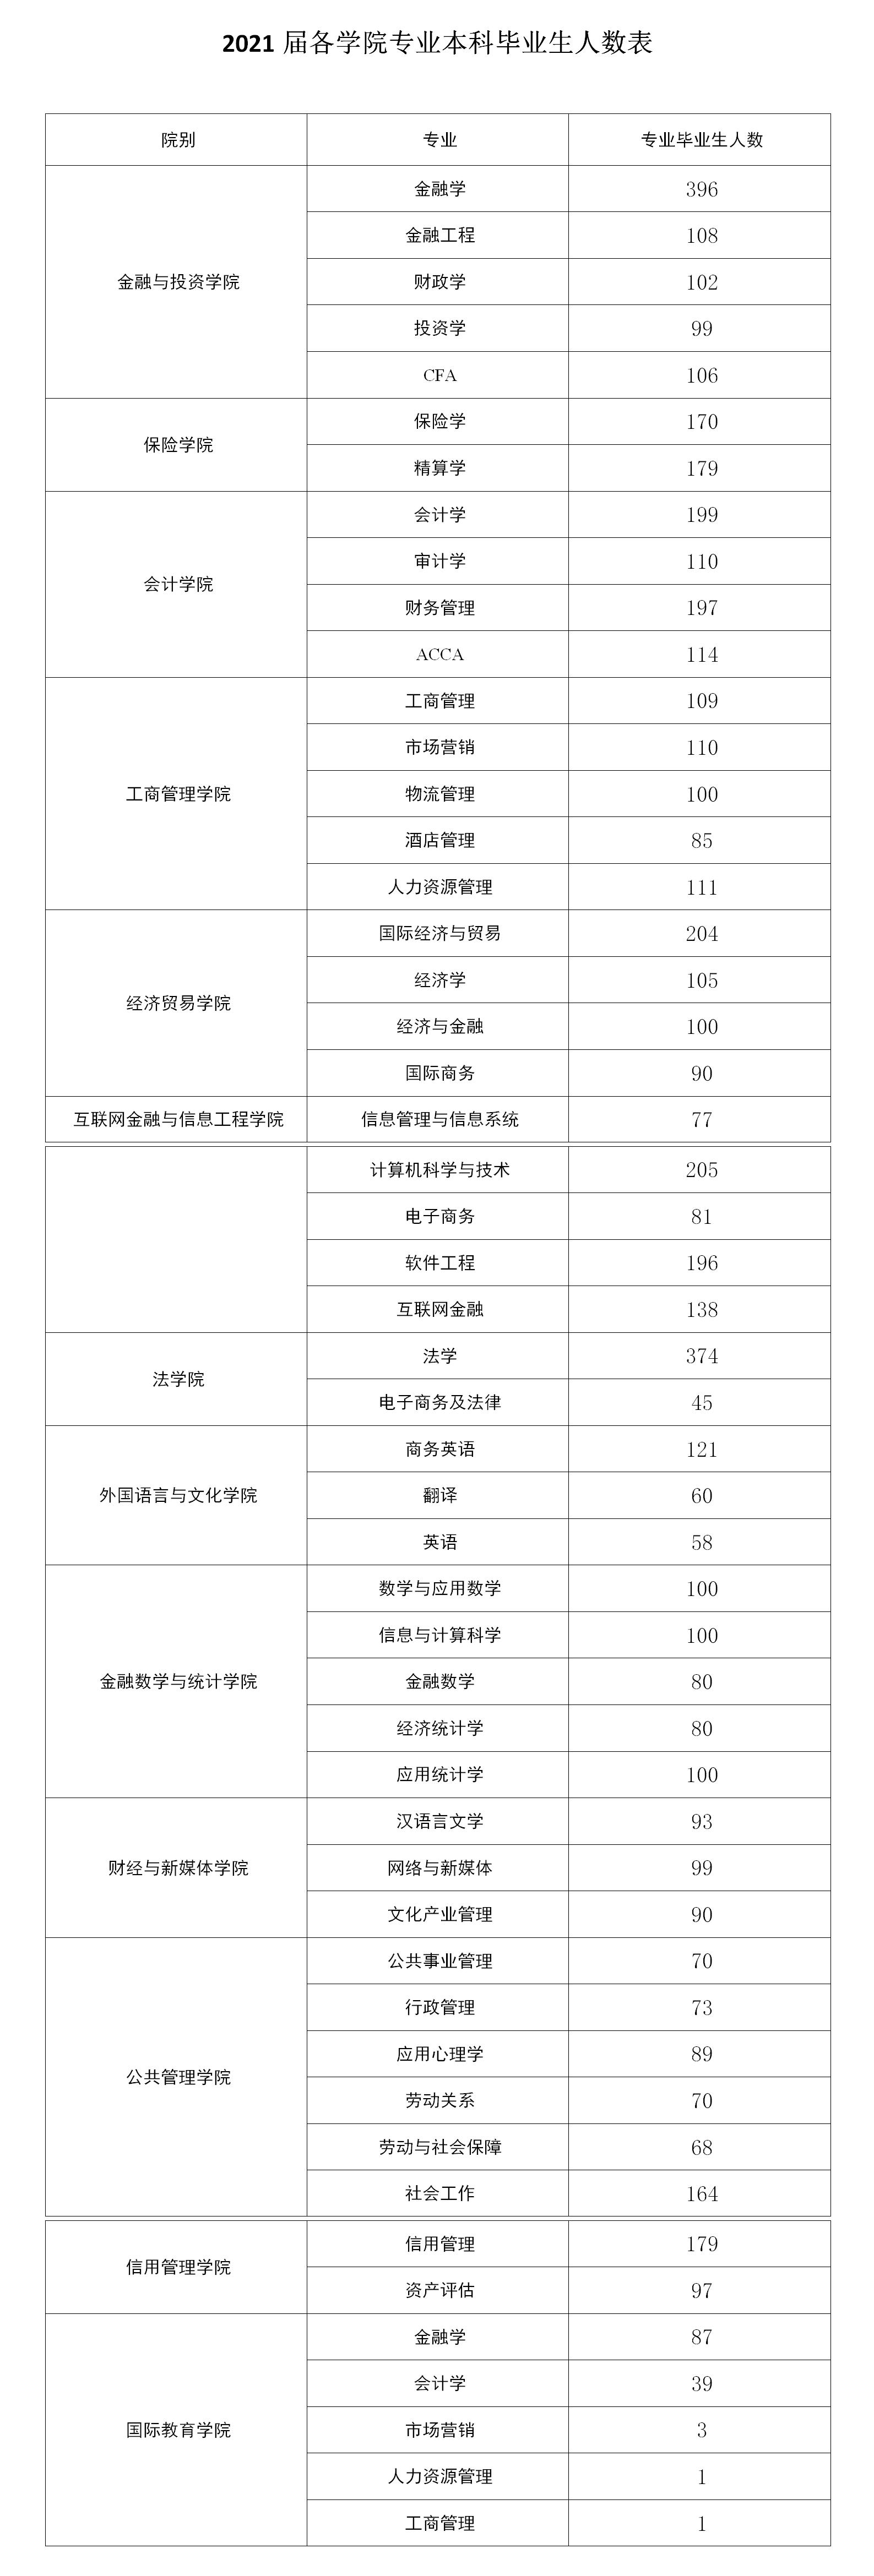 广东金融学院2021届各学院专业本科毕业生人数表.jpg